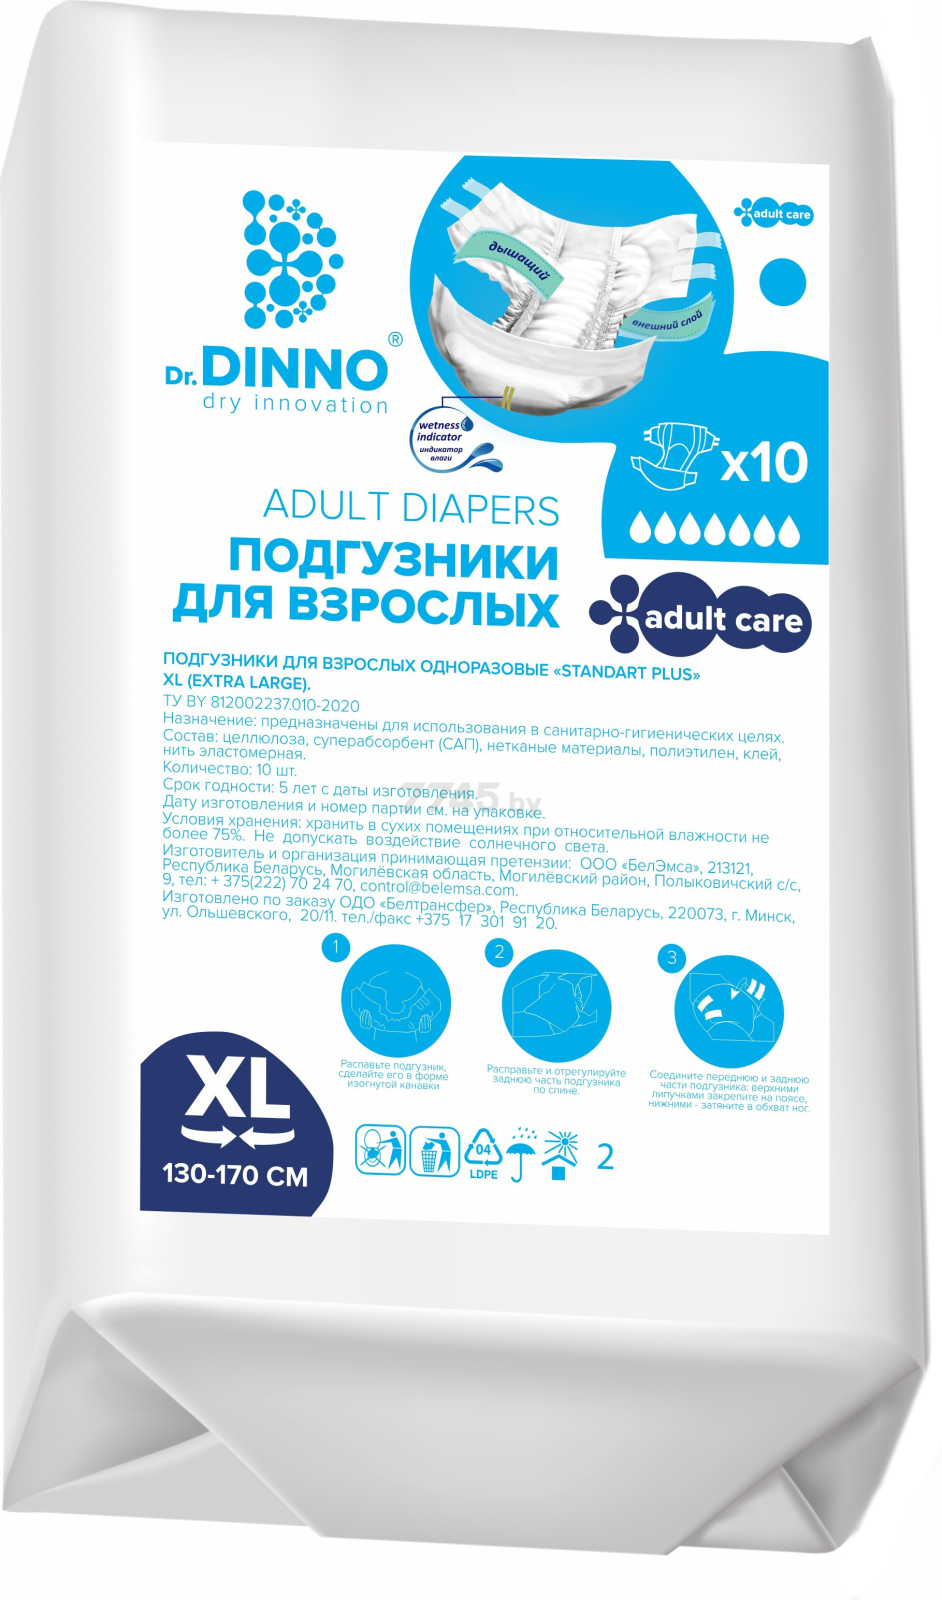 Подгузники для взрослых DR. DINNO Standart Plus Extra Large 130-170 см 10 штук (4810703154346)